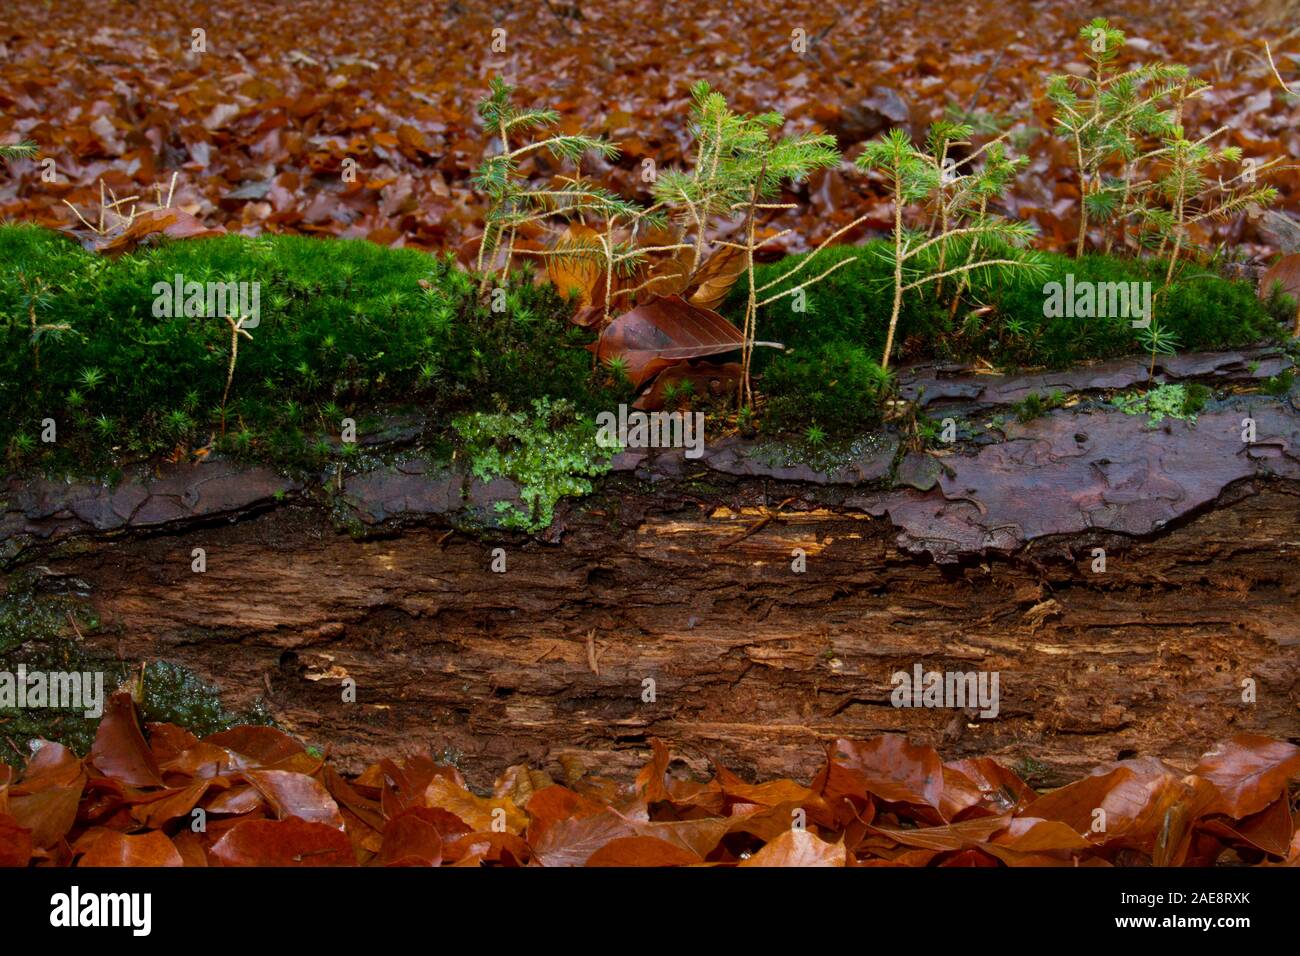 Le cercle de vie : les lichens, d'algues et de jeunes pins qui poussent sur les souches en décomposition d'un arbre mort Banque D'Images